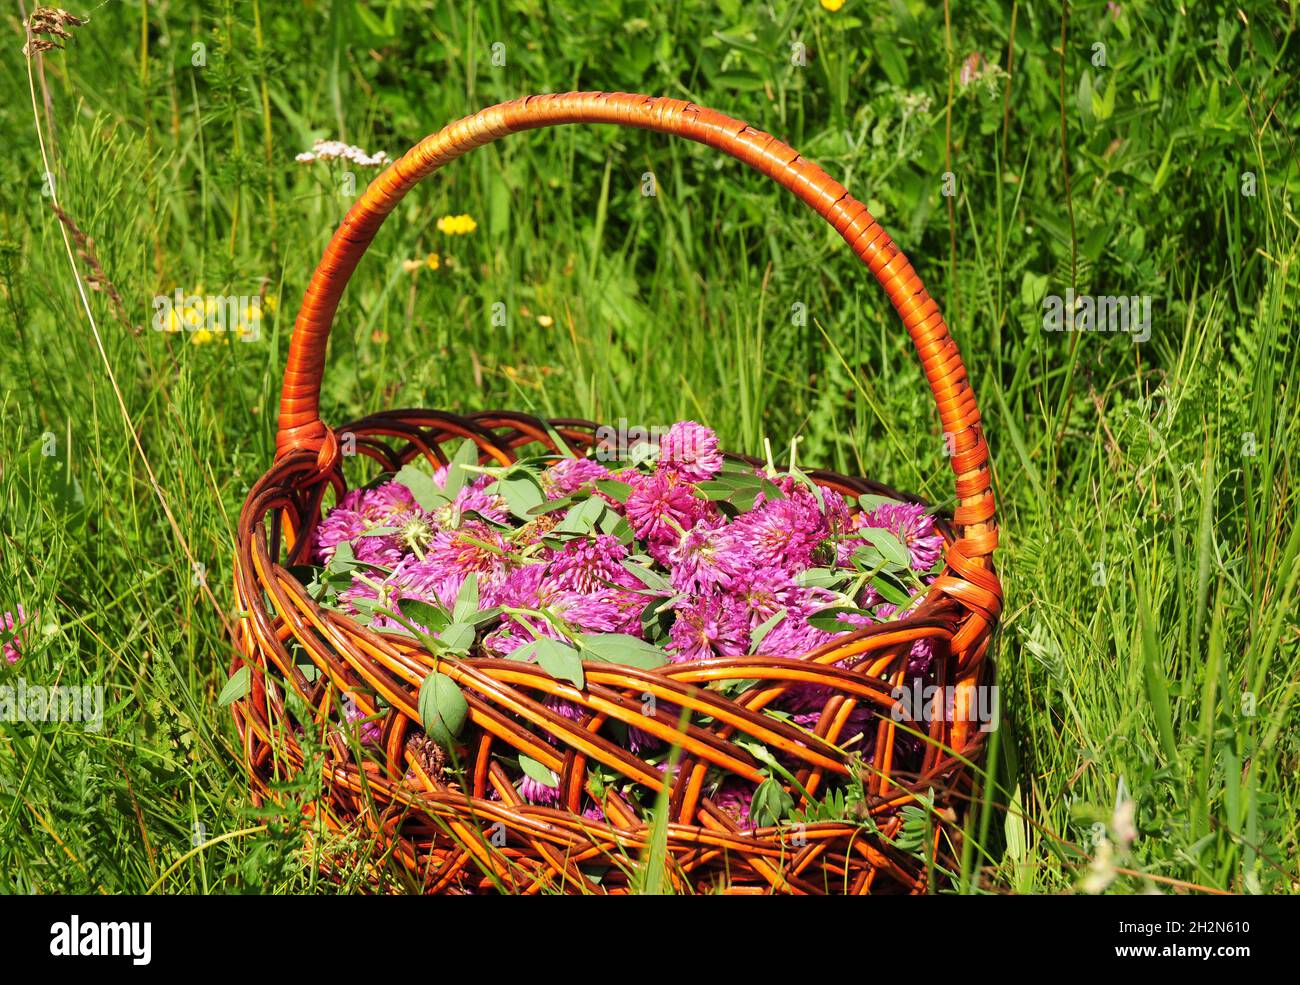 Trébol rojo en la cesta. Reunir hierbas para la medicina herbaria. Plantas herbales. Es un ingrediente en algunas recetas para el té de essiac, té de hierbas Foto de stock